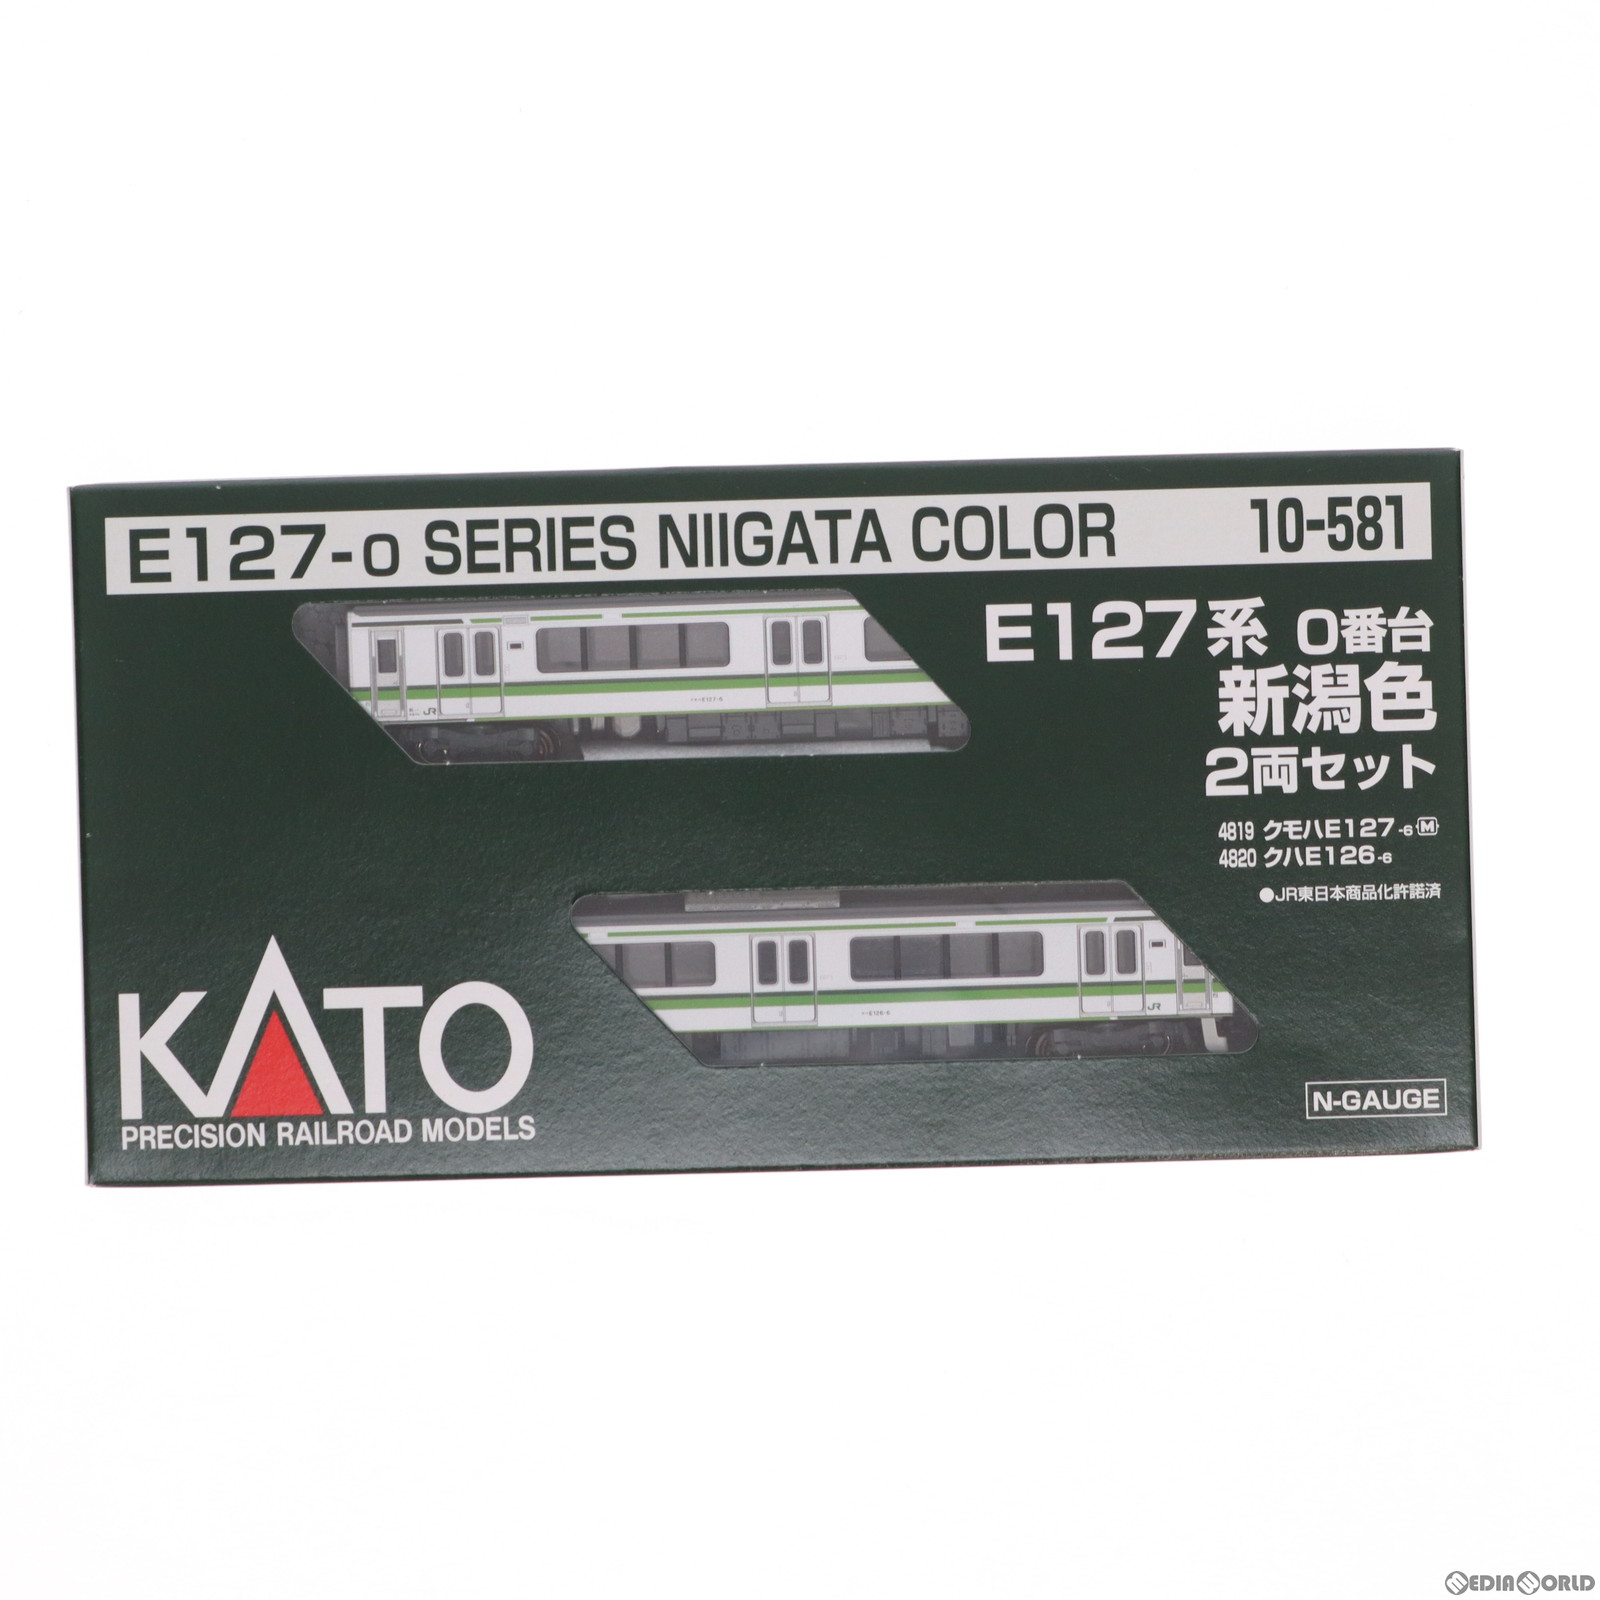 【中古即納】[RWM]10-581 E127系0番台 新潟色 2両セット(動力付き) Nゲージ 鉄道模型 KATO(カトー)(20100831)